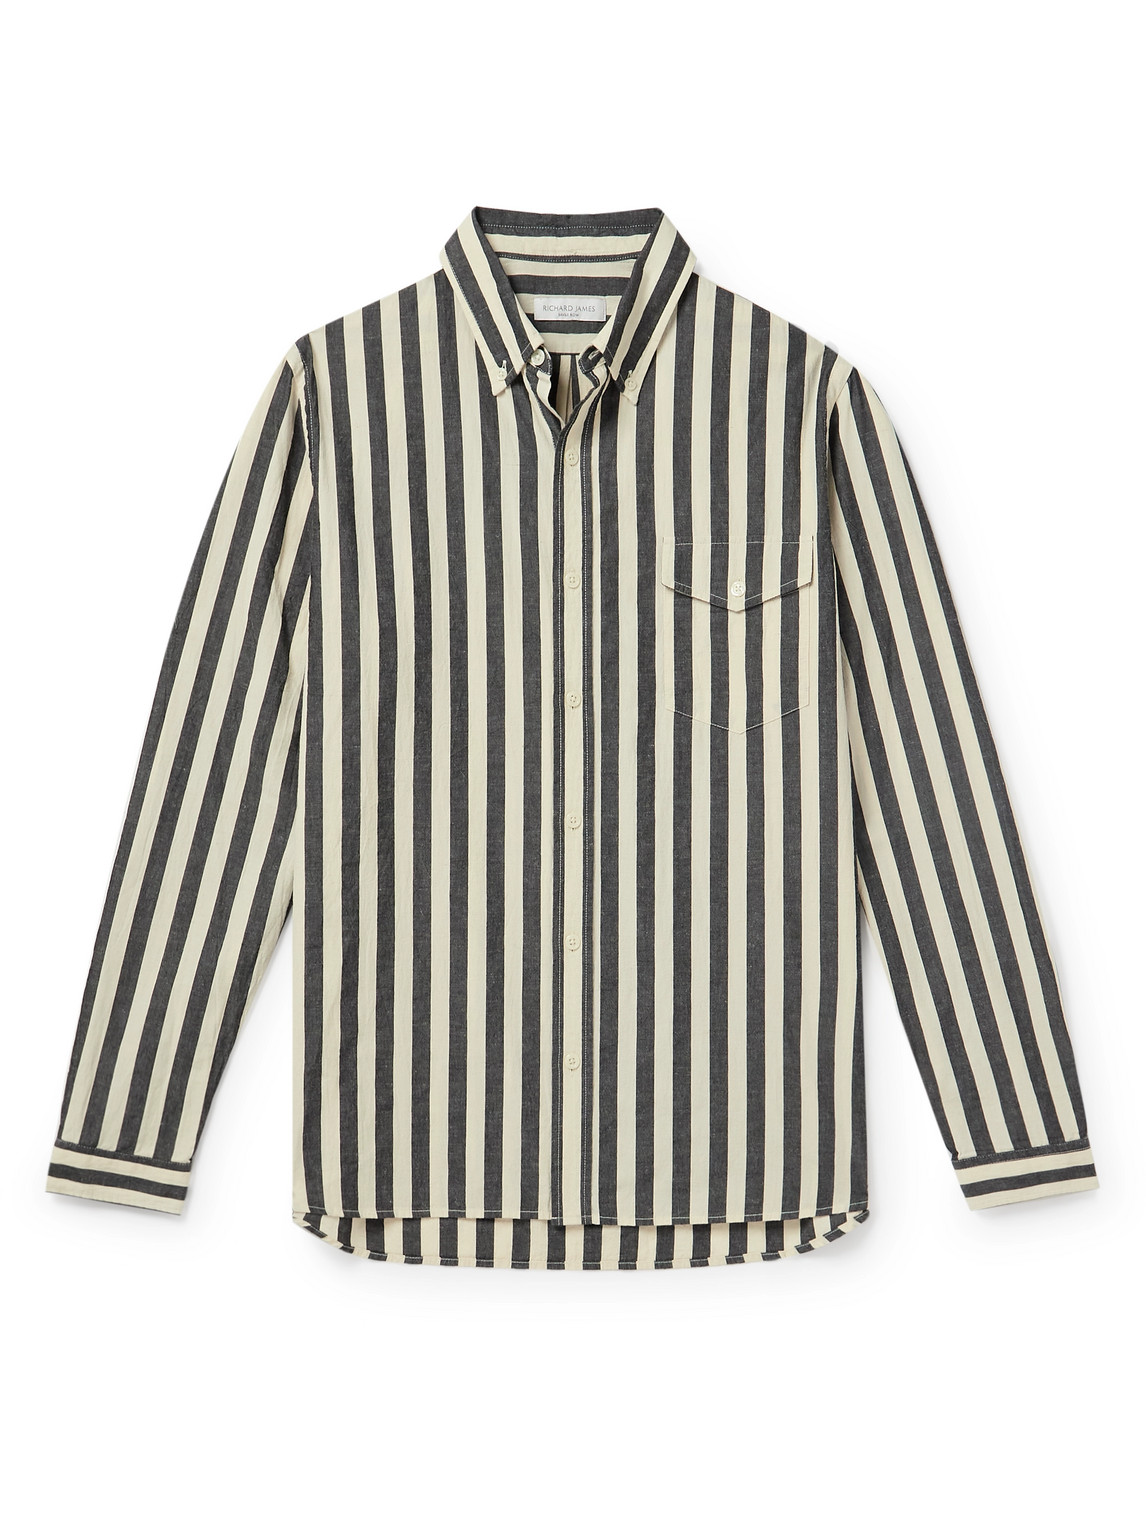 Richard James - Button-Down Collar Striped Slub Cotton Oxford Shirt - Men - Neutrals - L von Richard James